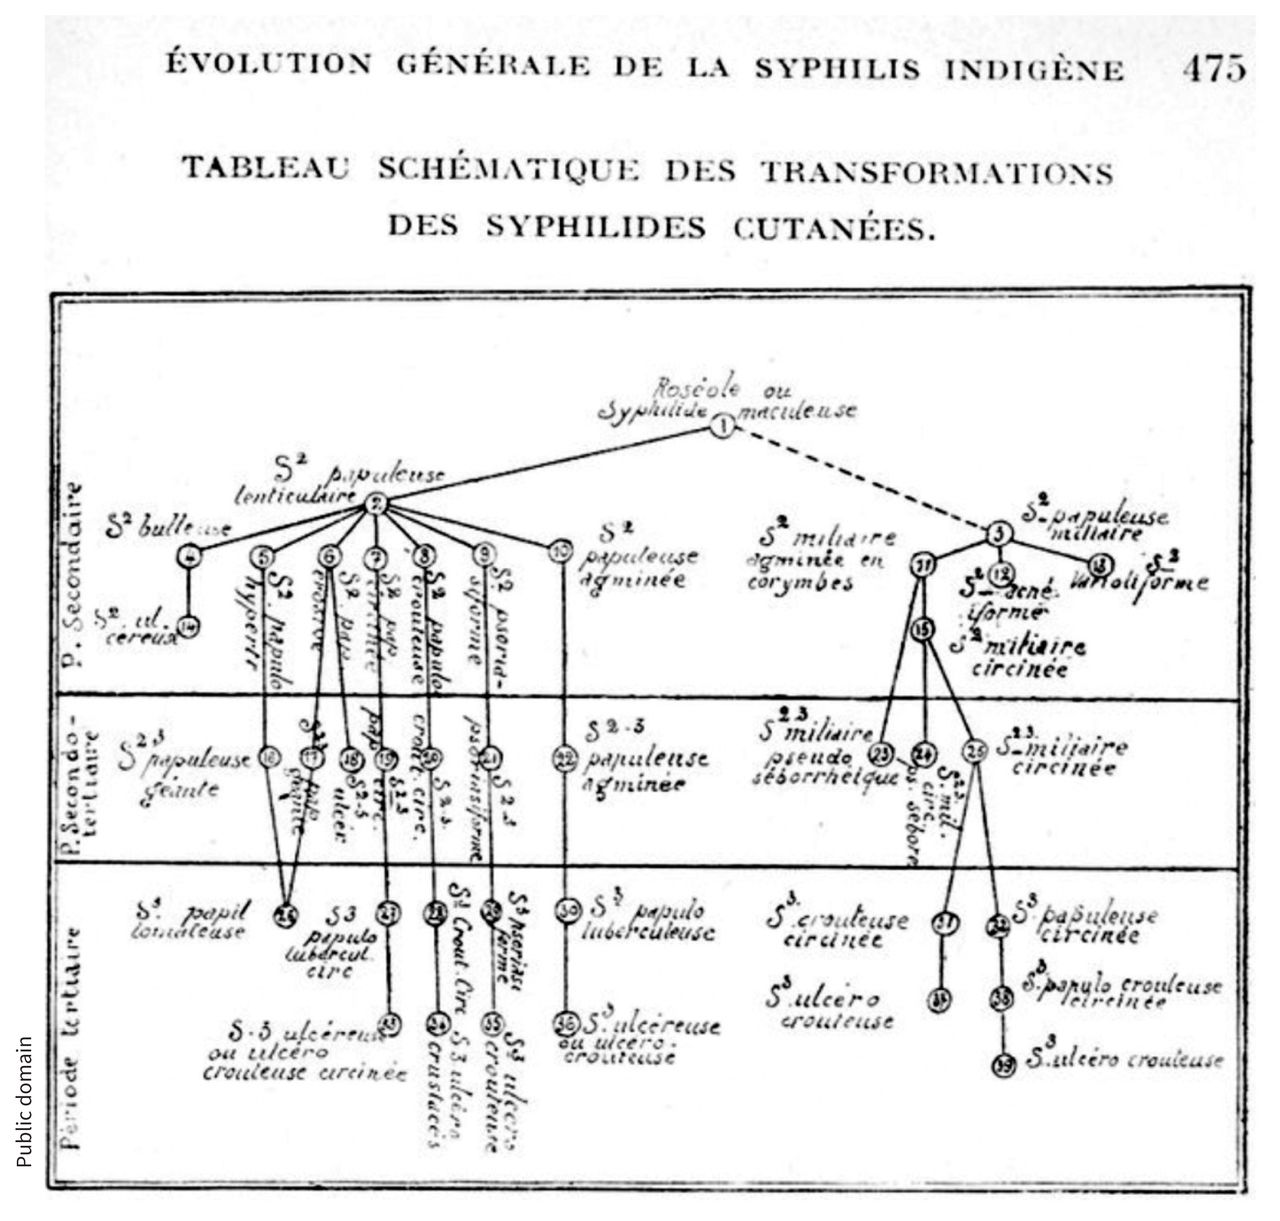 Lacapère’s schematic of the evolution of “Arab syphilis.” From Georges Lacapère, La syphilis arabe: Maroc, Algérie, Tunisie (Paris: Octave Doin; 1923).

Image courtesy of Public domain